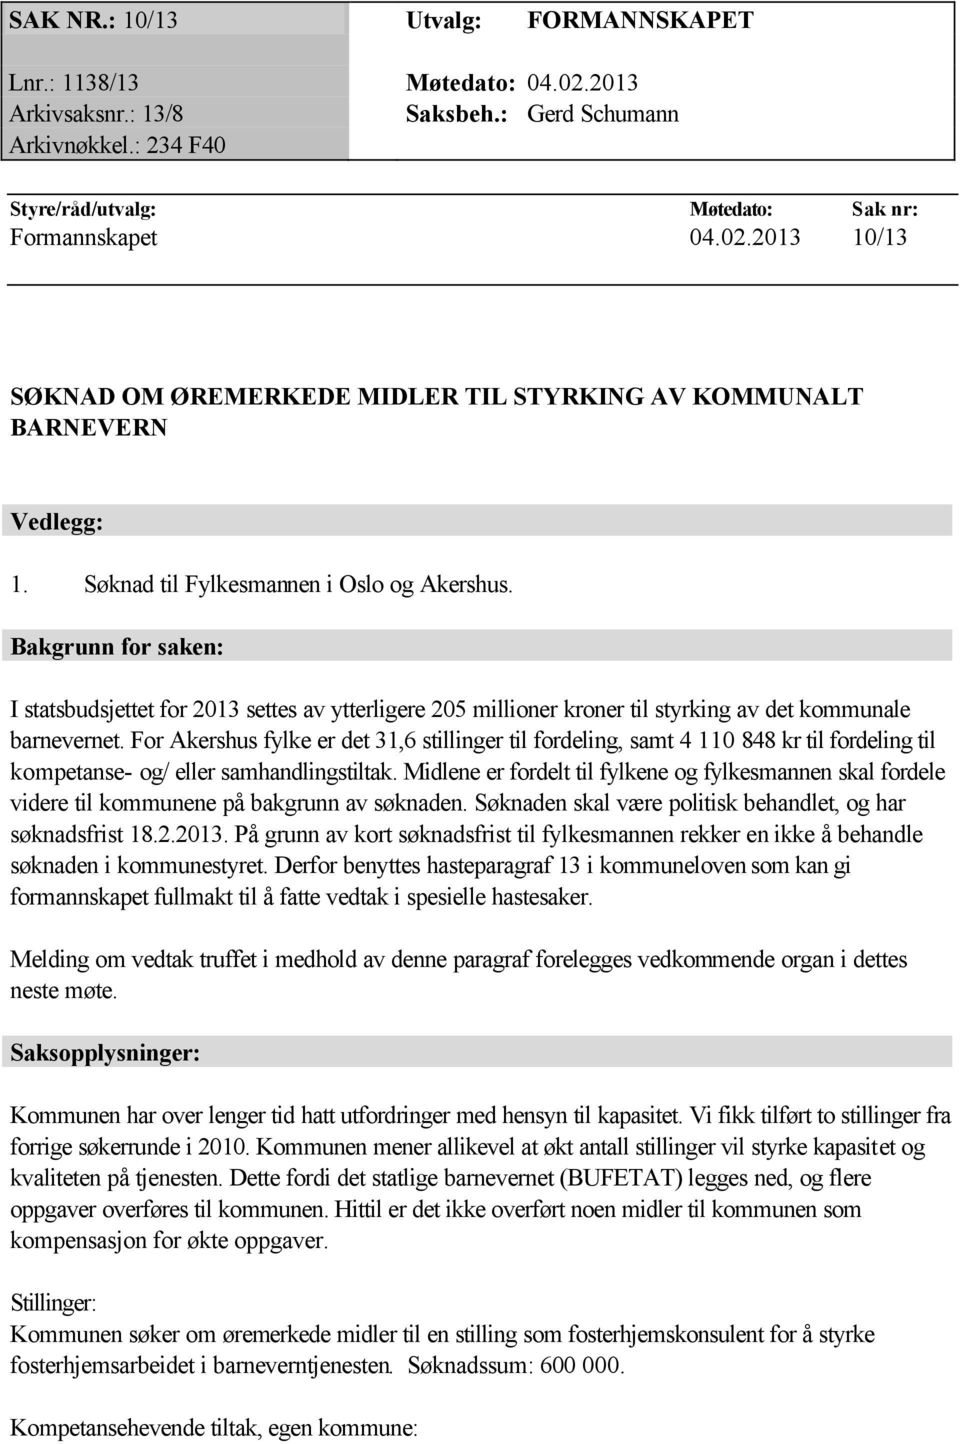 For Akershus fylke er det 31,6 stillinger til fordeling, samt 4 110 848 kr til fordeling til kompetanse- og/ eller samhandlingstiltak.